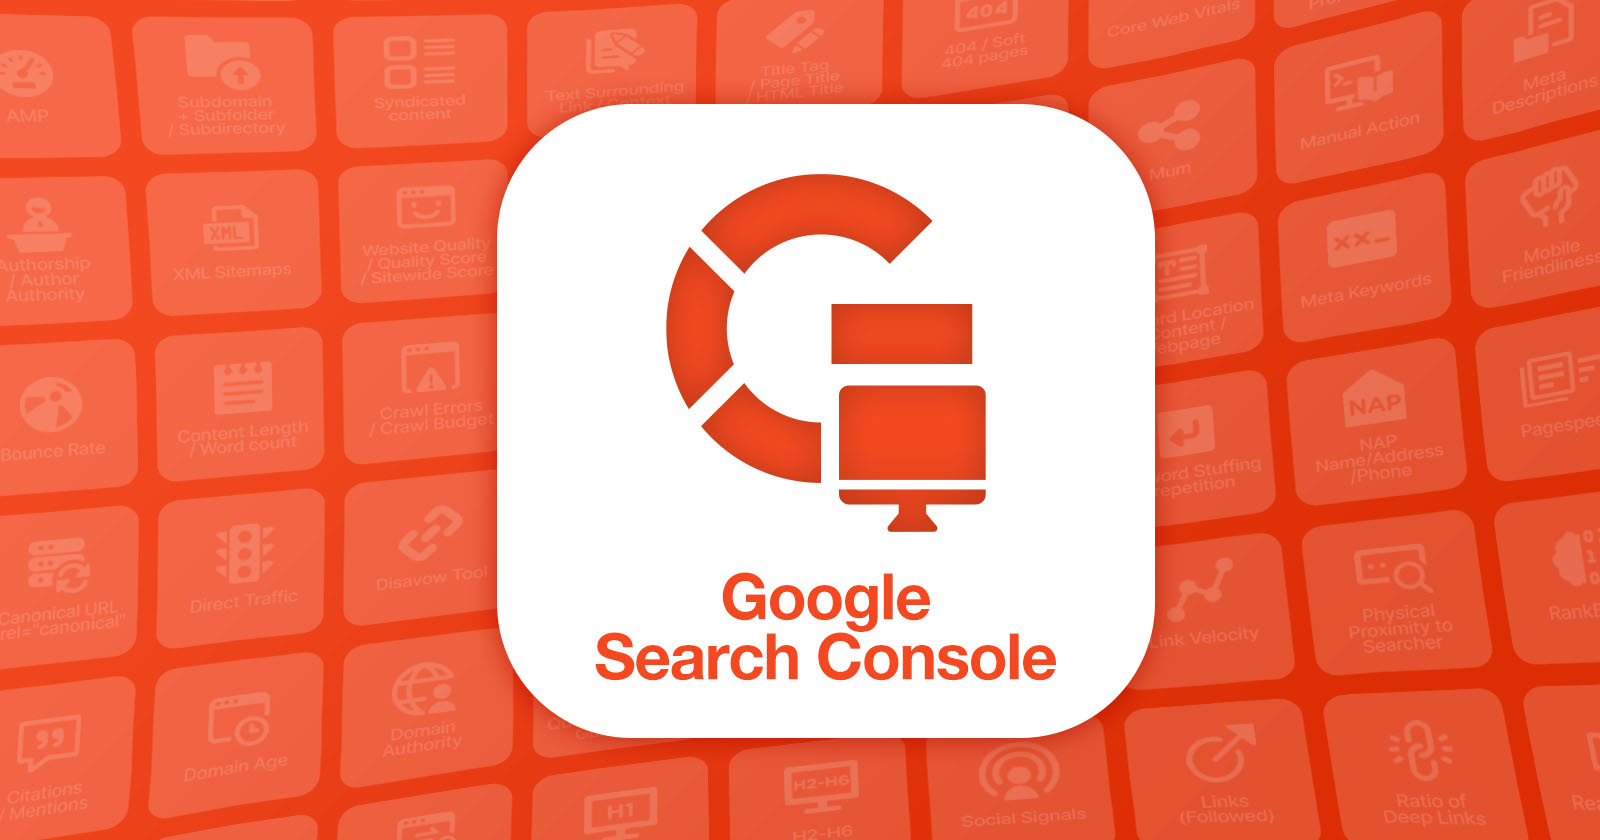 Google Search Console: Is It A Ranking Factor? via @sejournal, @KayleLarkin